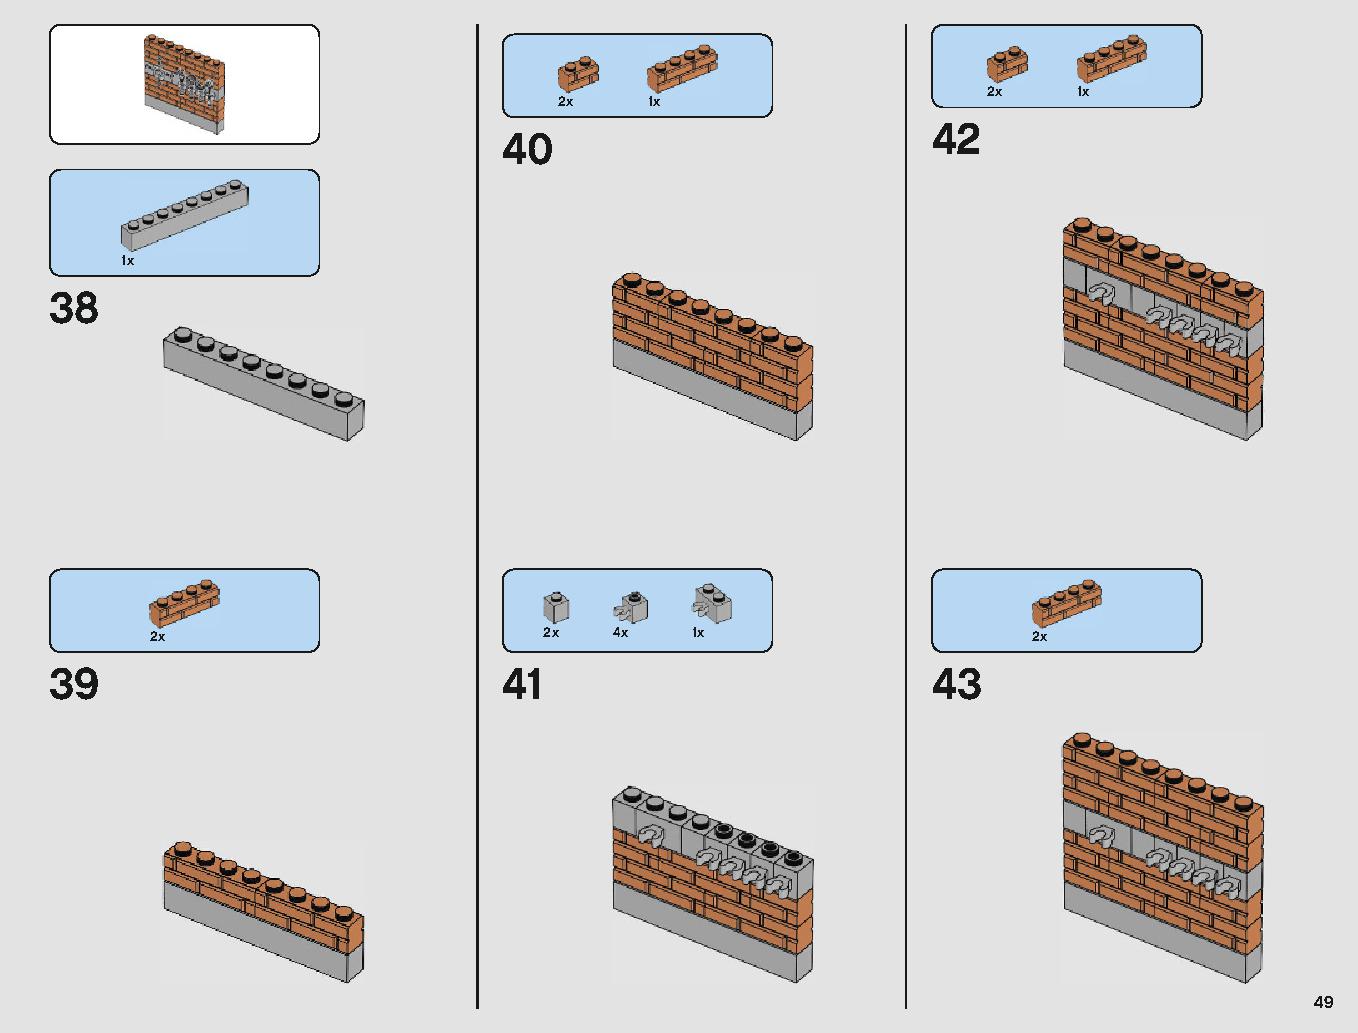 フェラーリ・アルティメット・ガレージ 75889 レゴの商品情報 レゴの説明書・組立方法 49 page